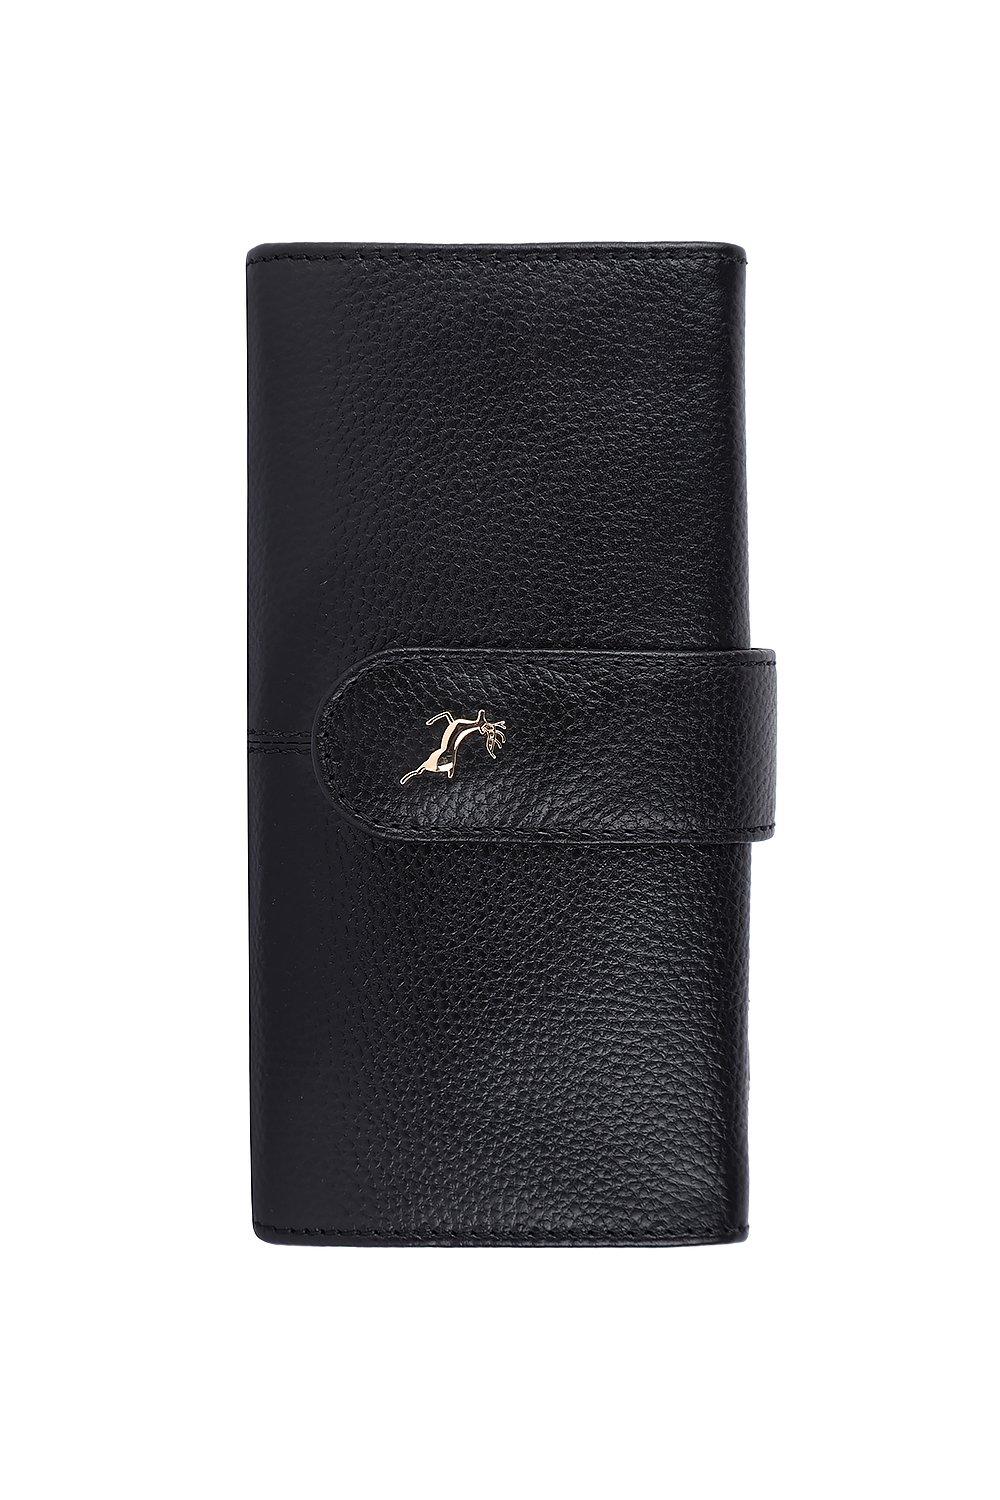 Большой кошелек Sherry из натуральной кожи с защитой RFID на 14 карт Ashwood Leather, черный